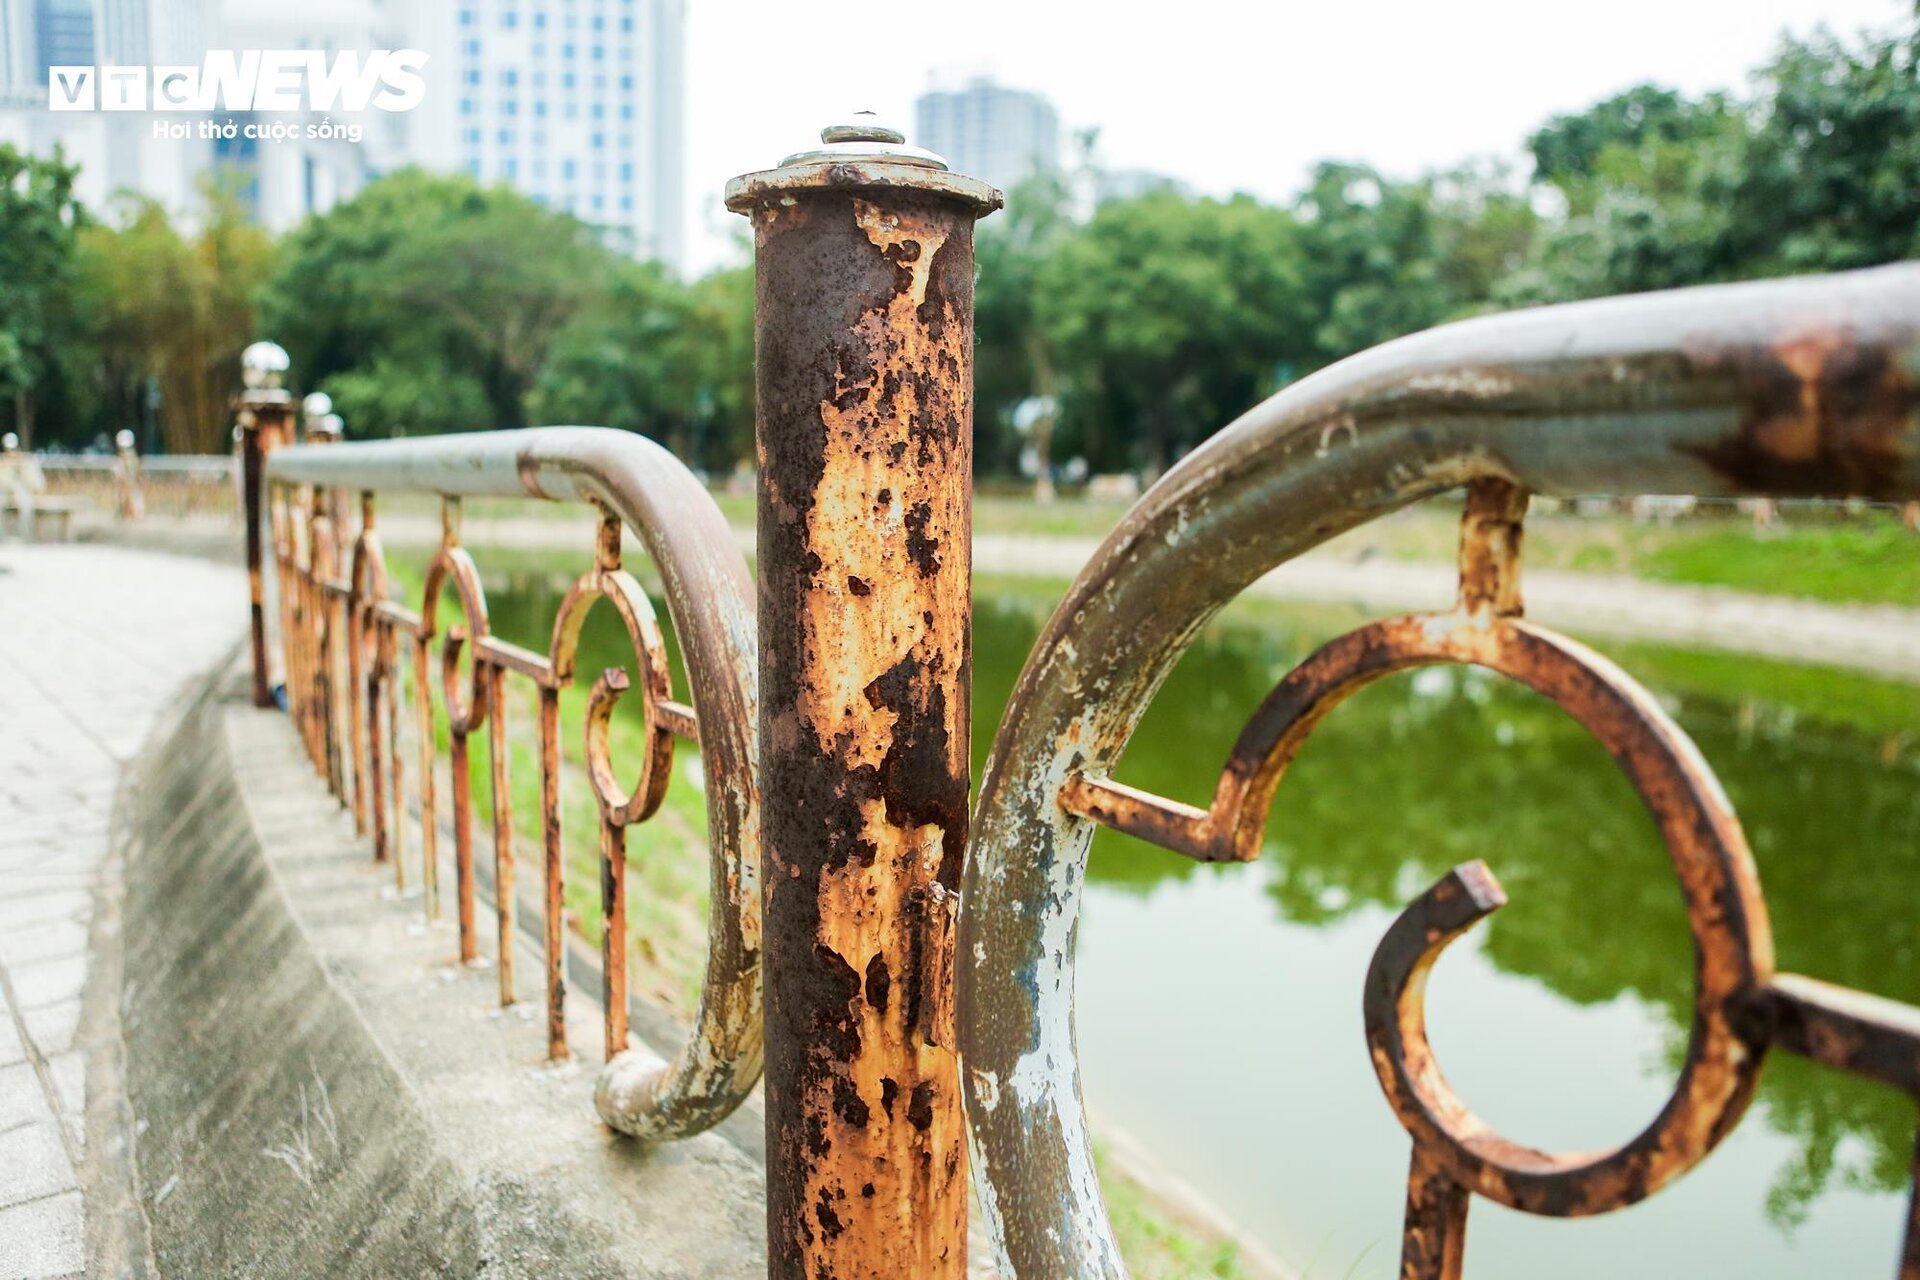 Hiện trạng xuống cấp của 2 công viên lớn ở Hà Nội sắp được cải tạo - Ảnh 6.